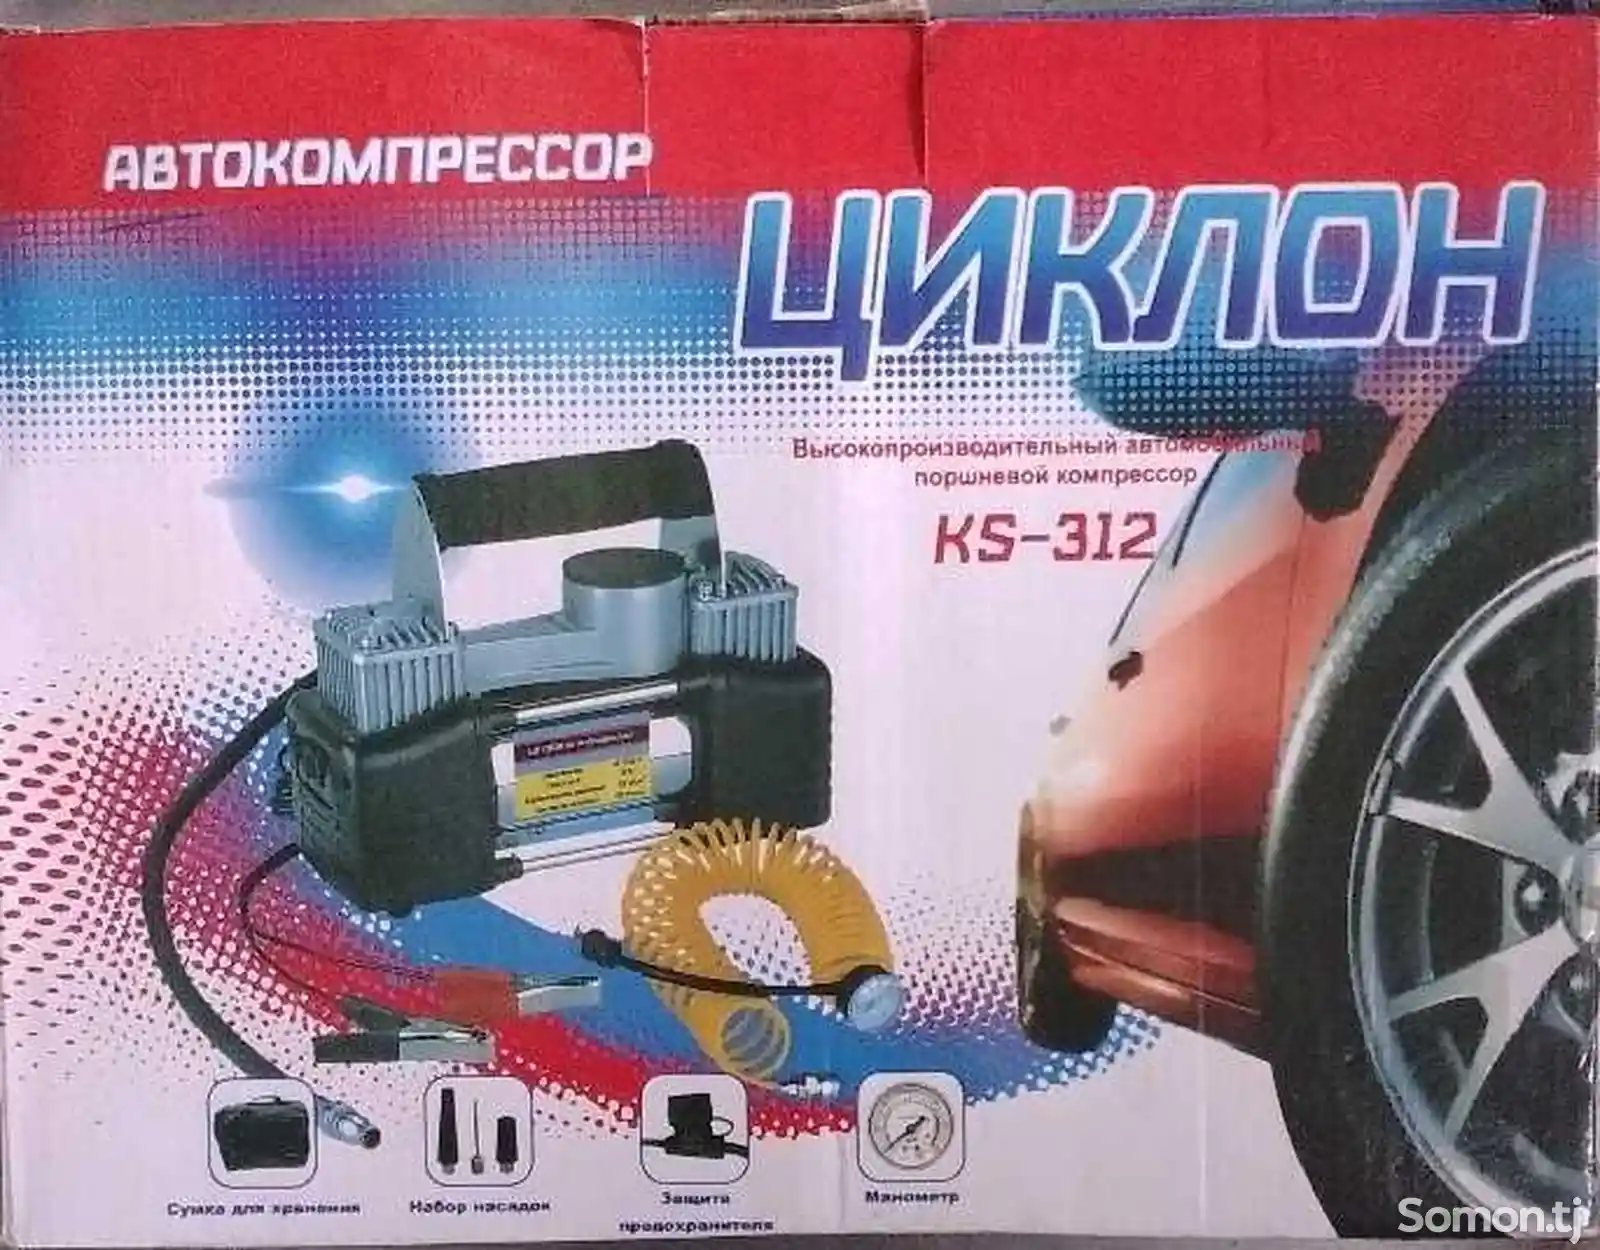 Автокомпресcор-1